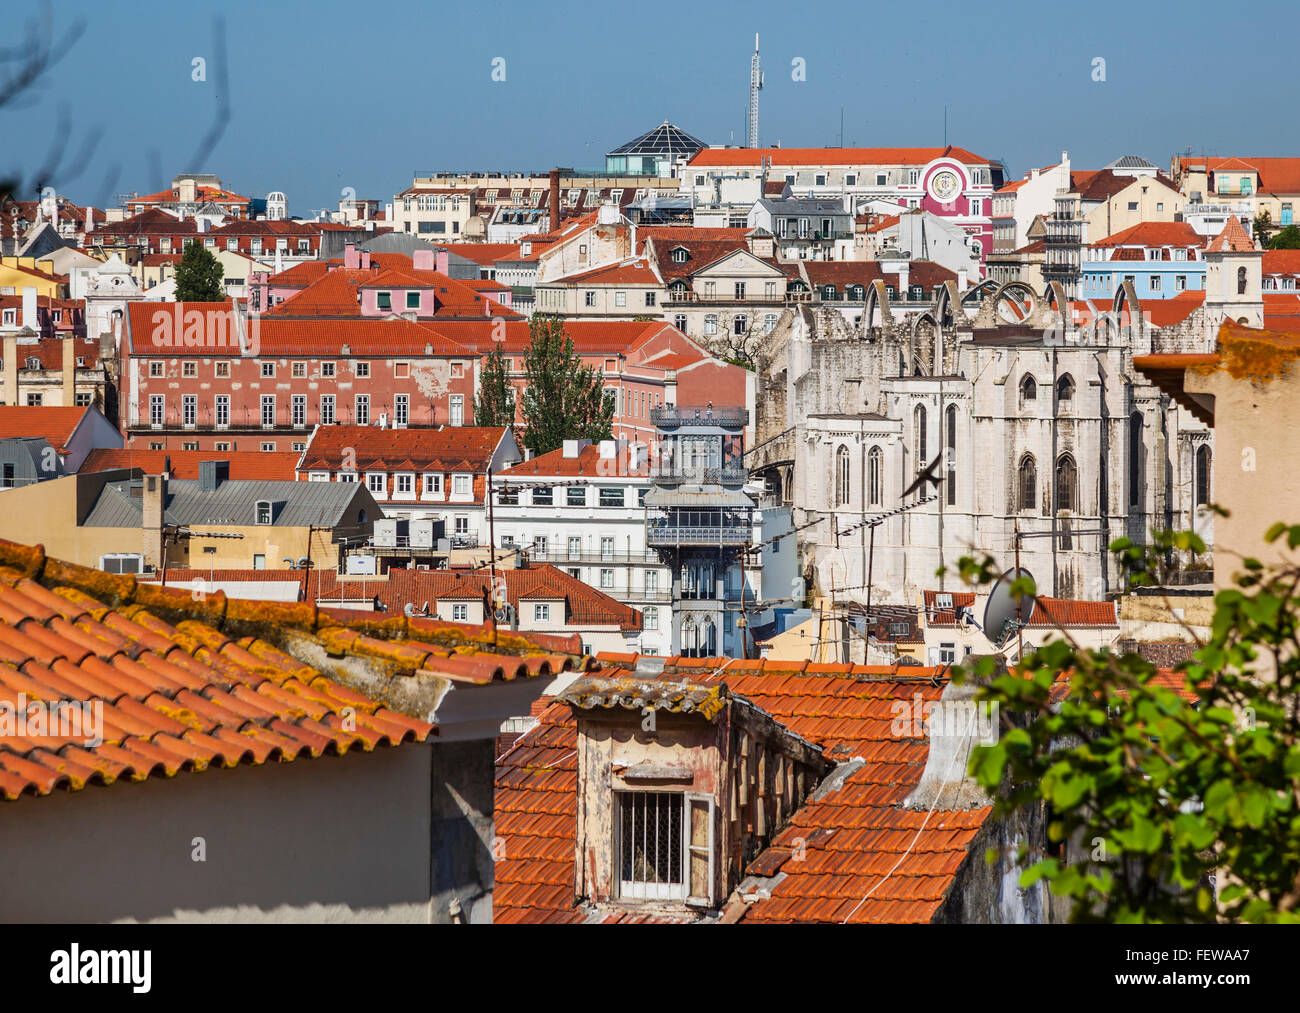 Portugal, Lisbonne, vue sur les toits du quartier de Baixa vers l'ascenseur de Santa Justa et les ruines de l'ancien couvent Carmo Banque D'Images